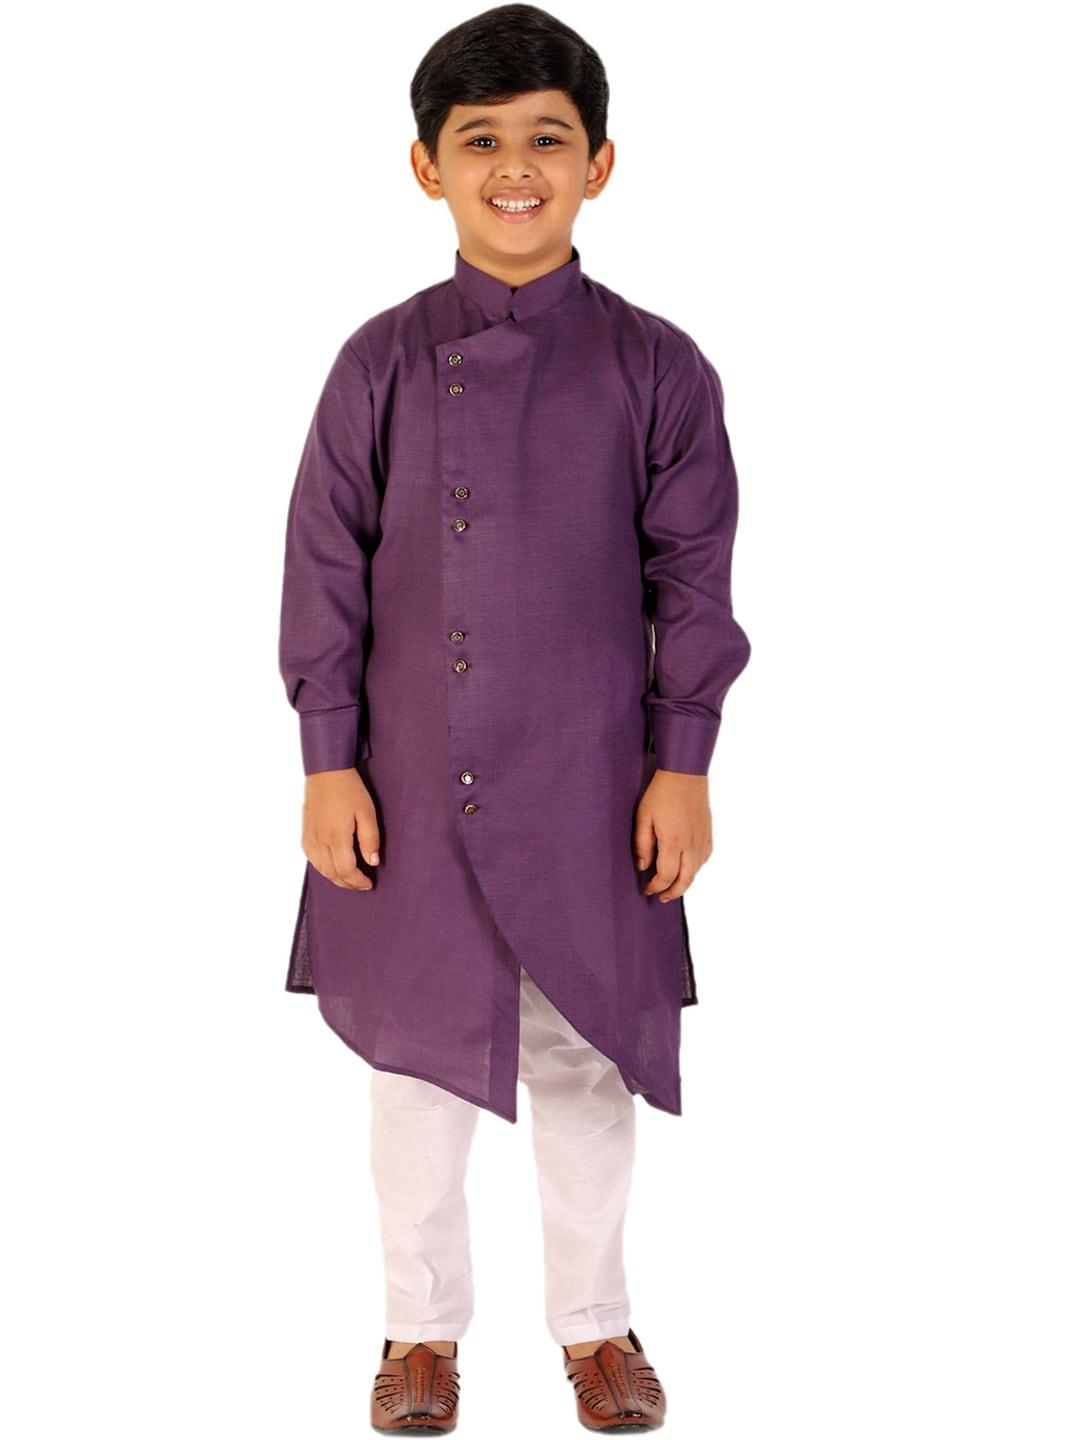 Pro-Ethic STYLE DEVELOPER Boys Purple & White Solid Jacquard Clothing Set